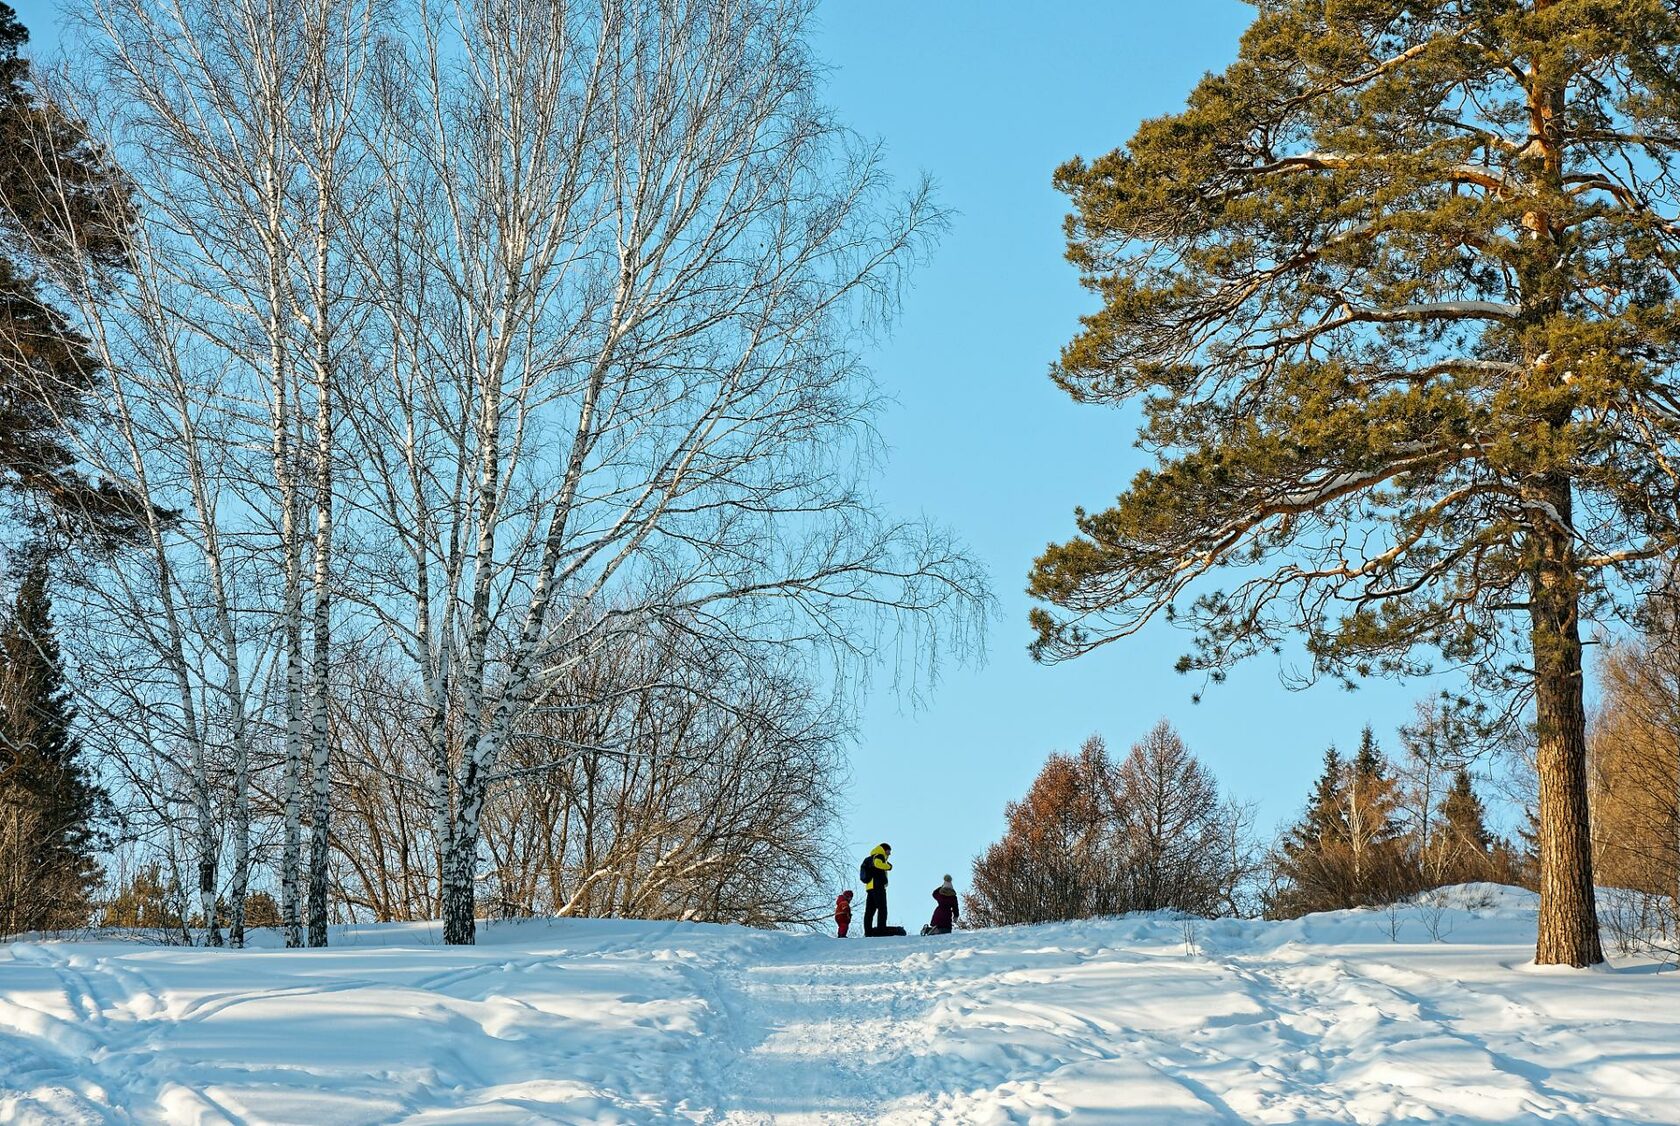 Пример удачного ландшафтного дизайна ботсада СО РАН - металлический шар, который зимой превращается в снежную шапку